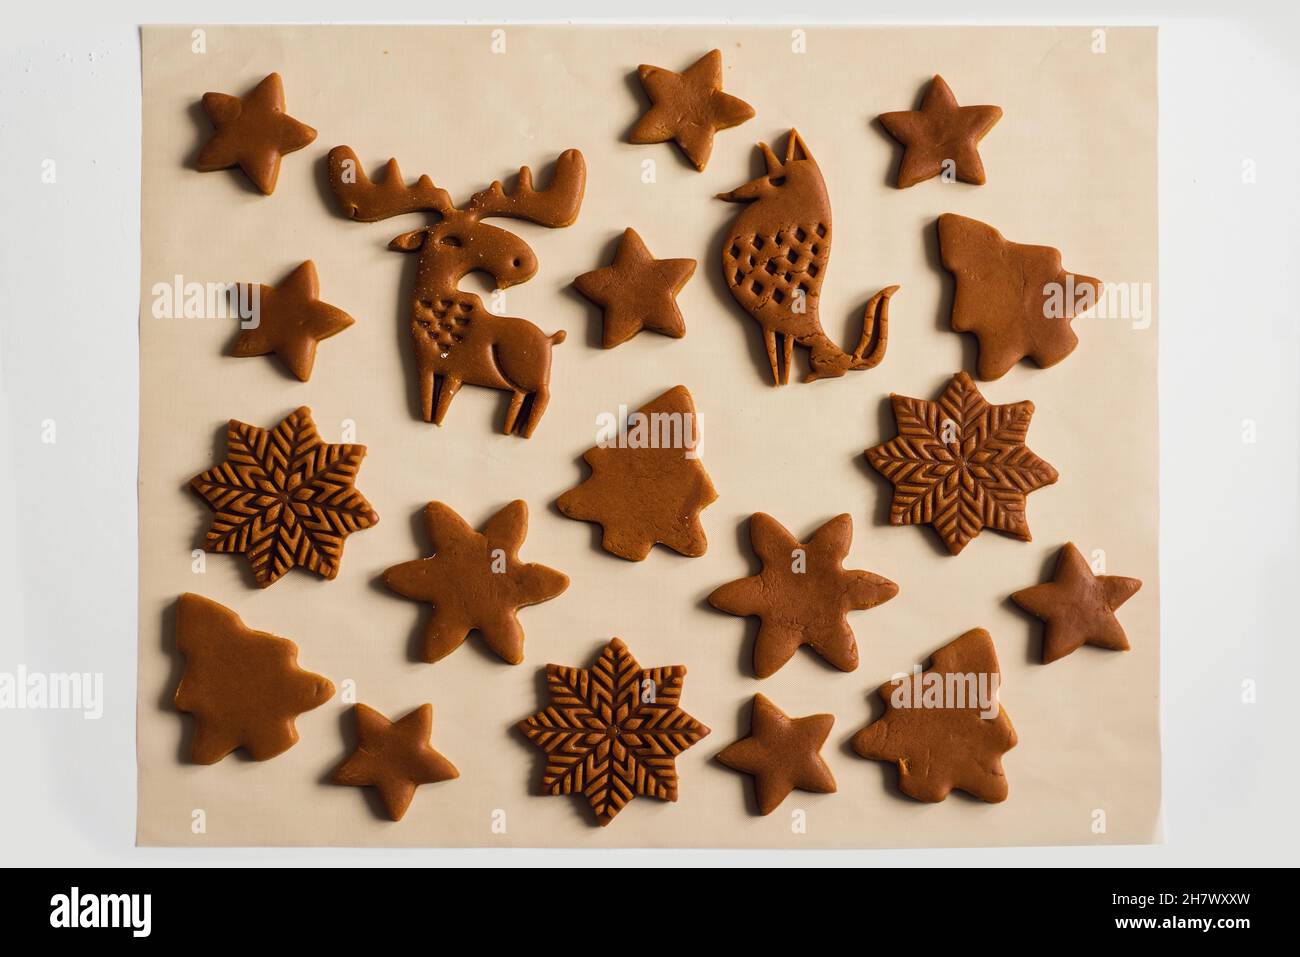 Motif de biscuits de pain d'épice de Noël sous forme d'animaux, d'arbres, de flocons de neige.Biscuits coupés de pâte crue sur un tapis de cuisson, vue de dessus, gros plan Banque D'Images